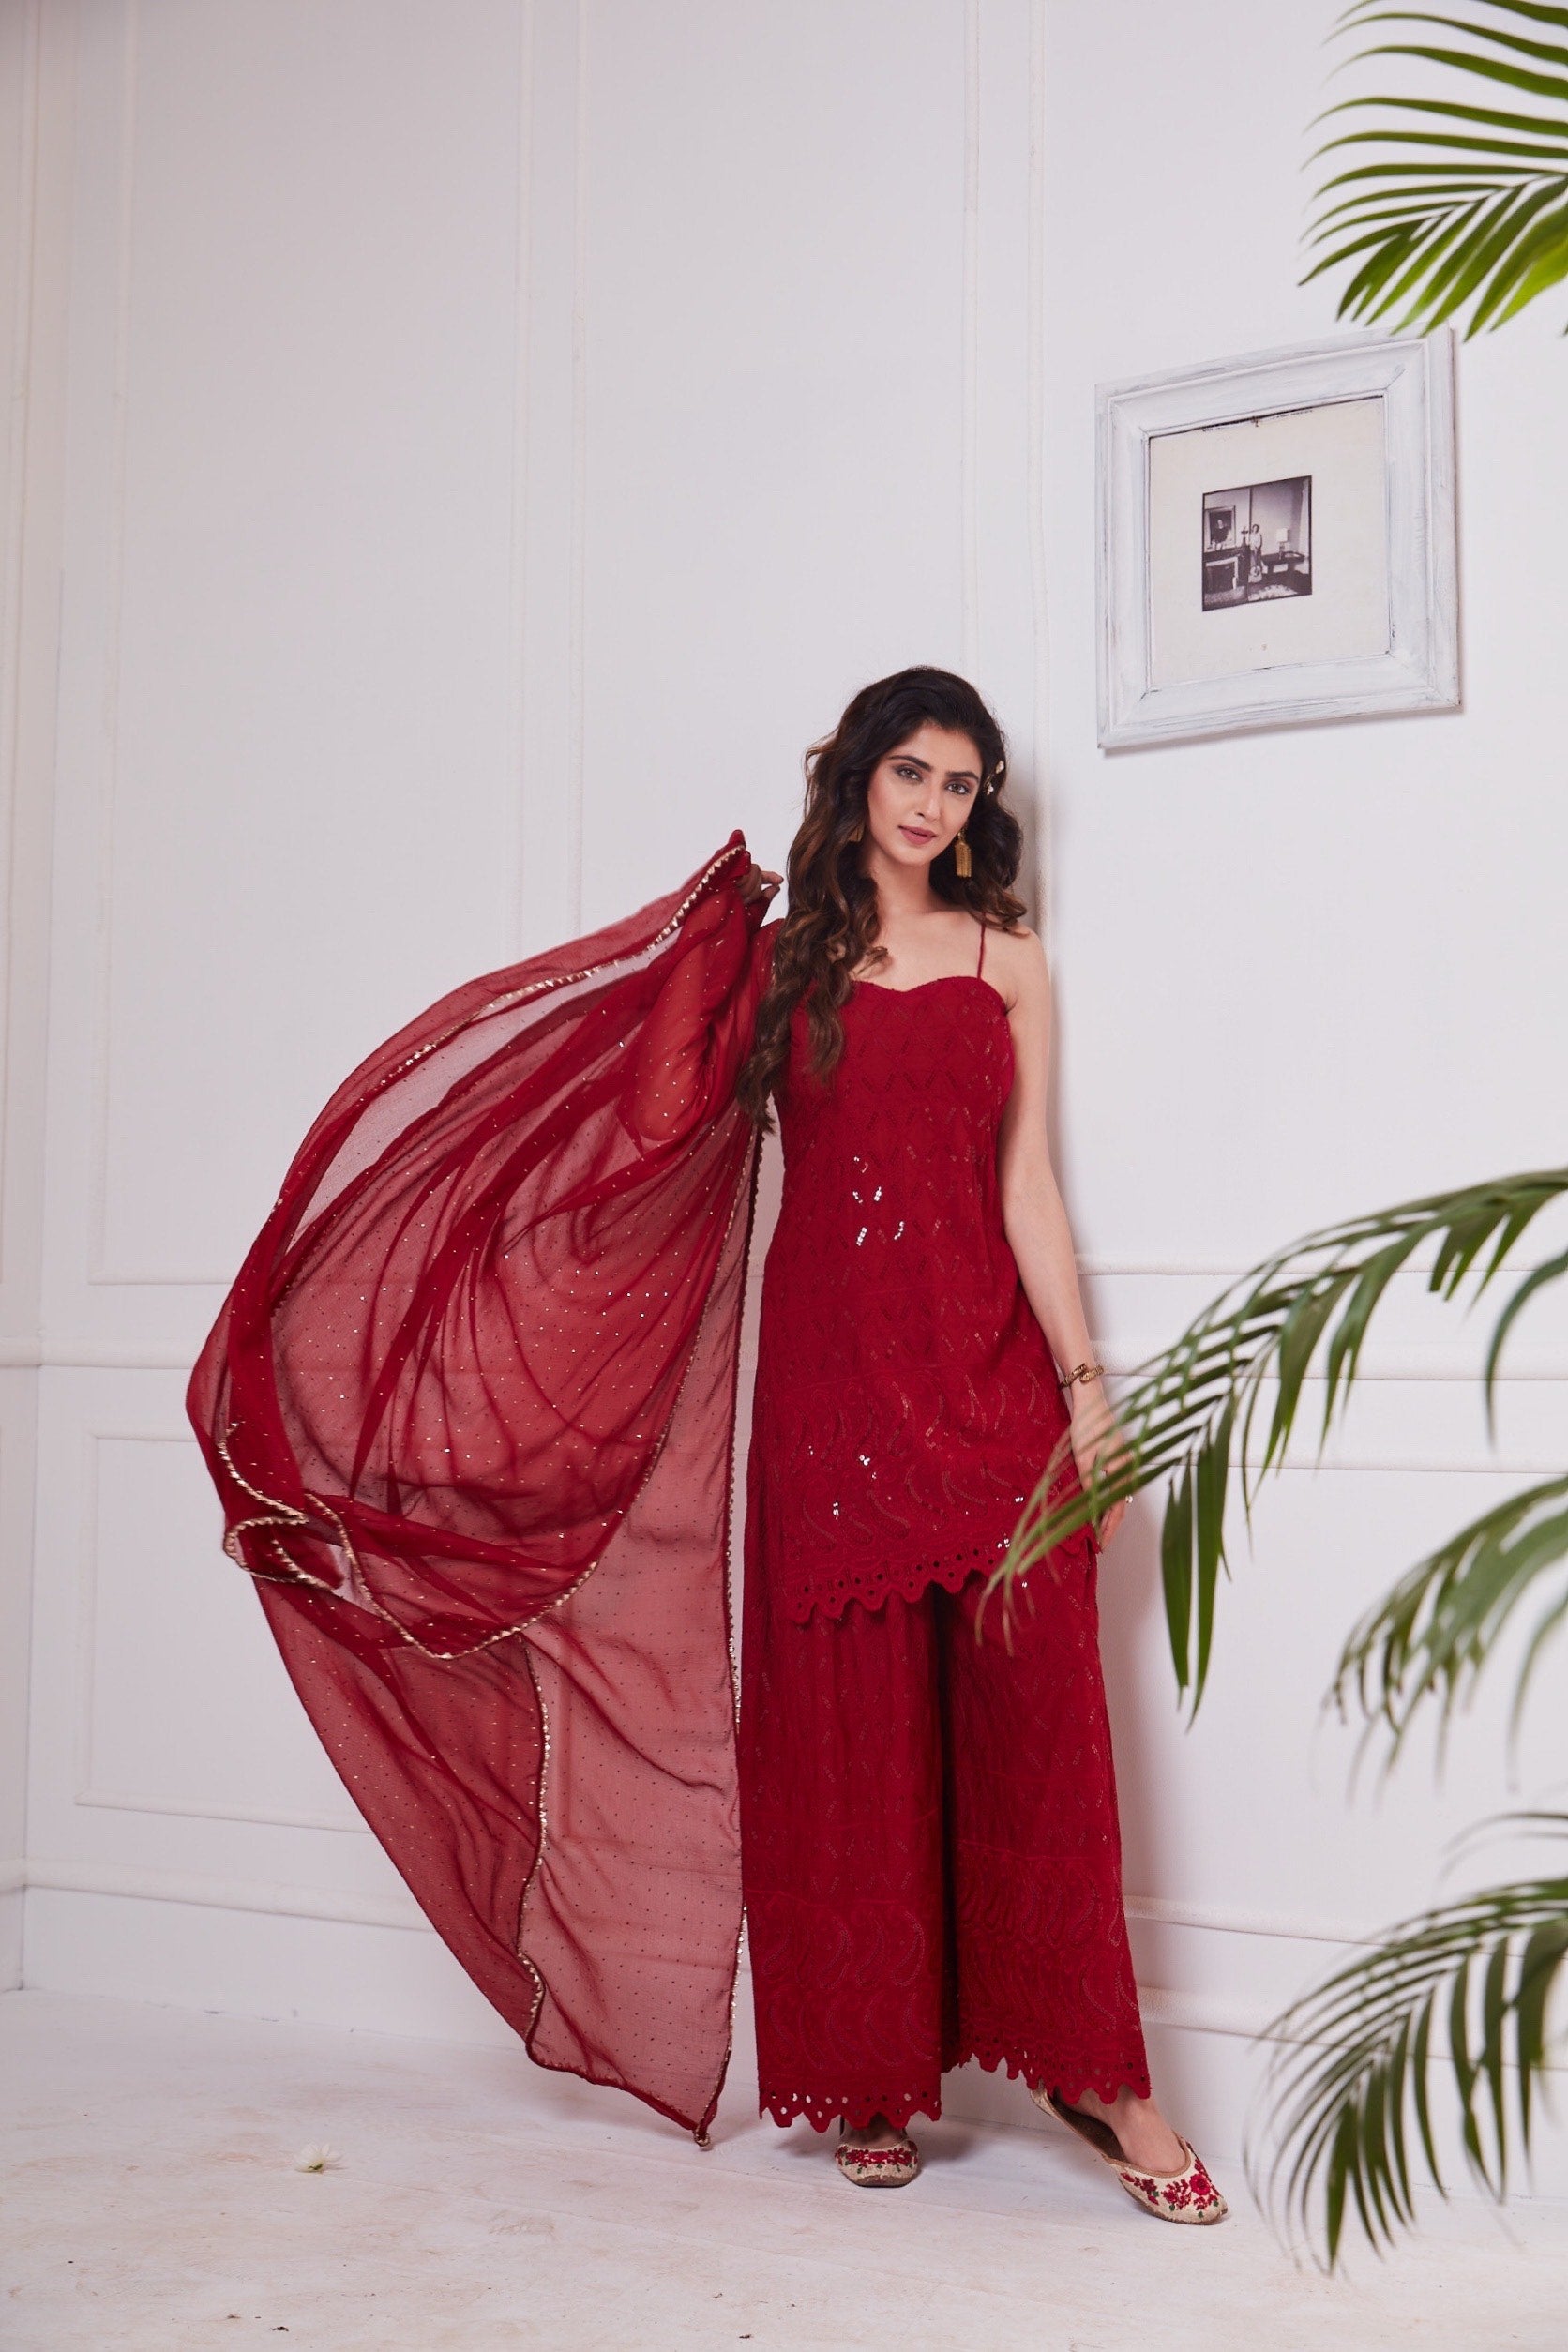 Nikita Sharma's rayon schiffly sequin work embellished Maroon Gharara set & Dupatta